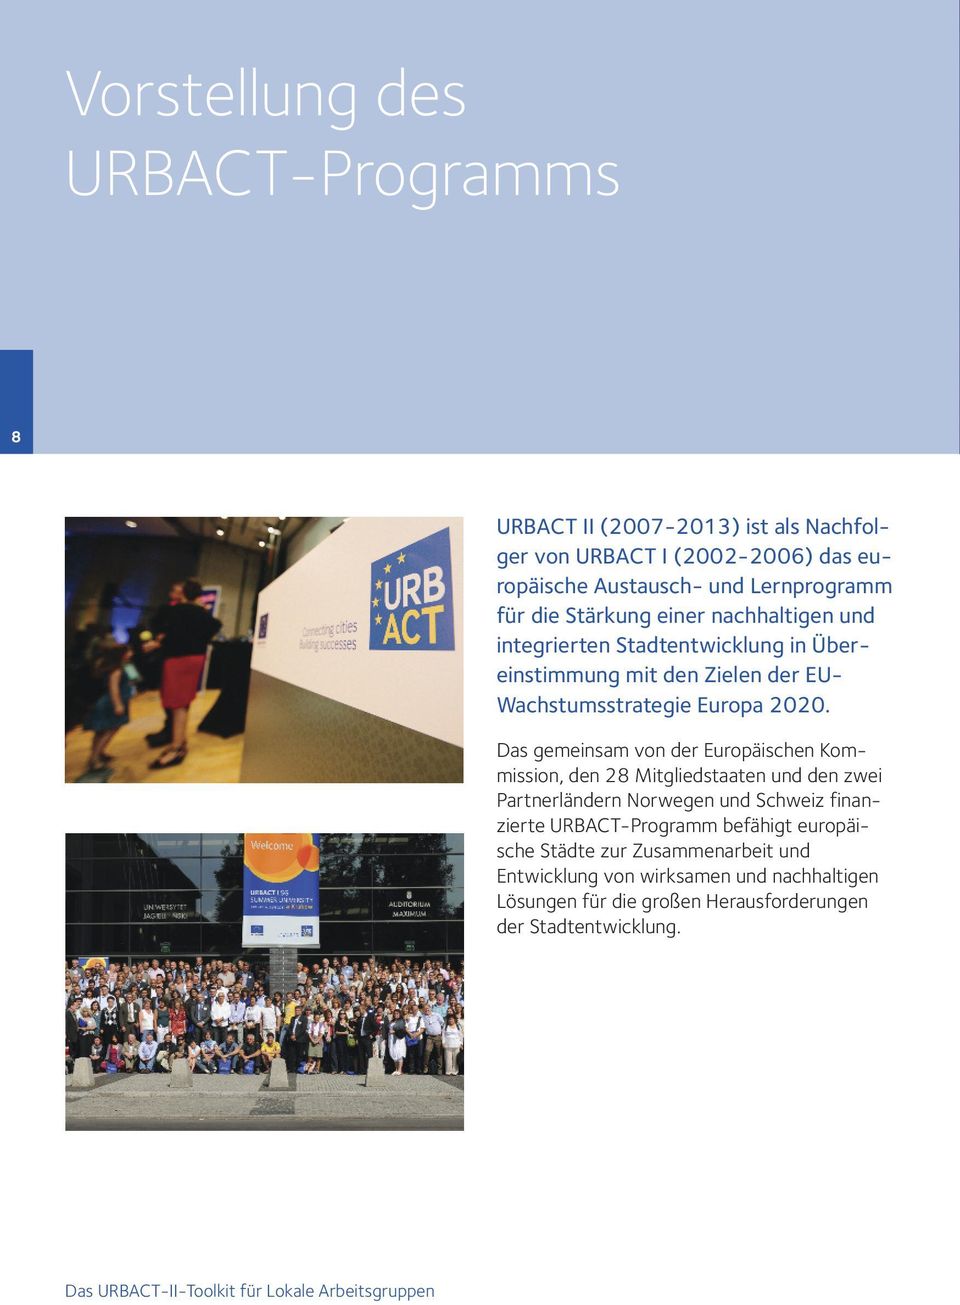 Das gemeinsam von der Europäischen Kommission, den 28 Mitgliedstaaten und den zwei Partnerländern Norwegen und Schweiz finanzierte URBACT-Programm